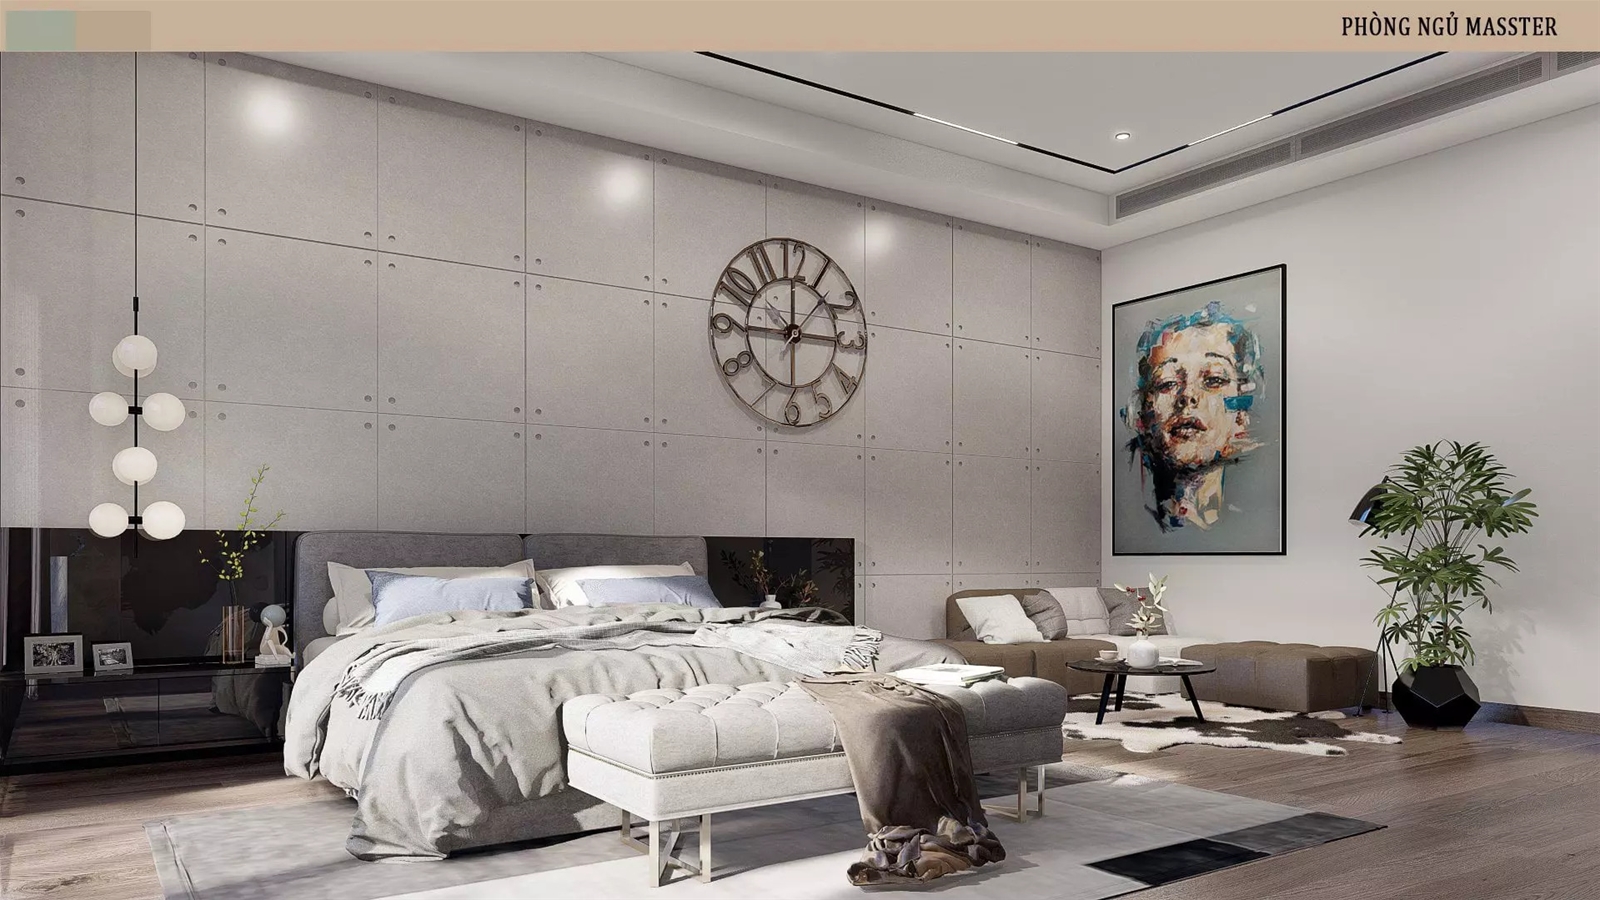 Phòng ngủ sang trọng, rộng rãi tạo hiệu ứng đặc biệt với các đồ decor nghệ thuật.